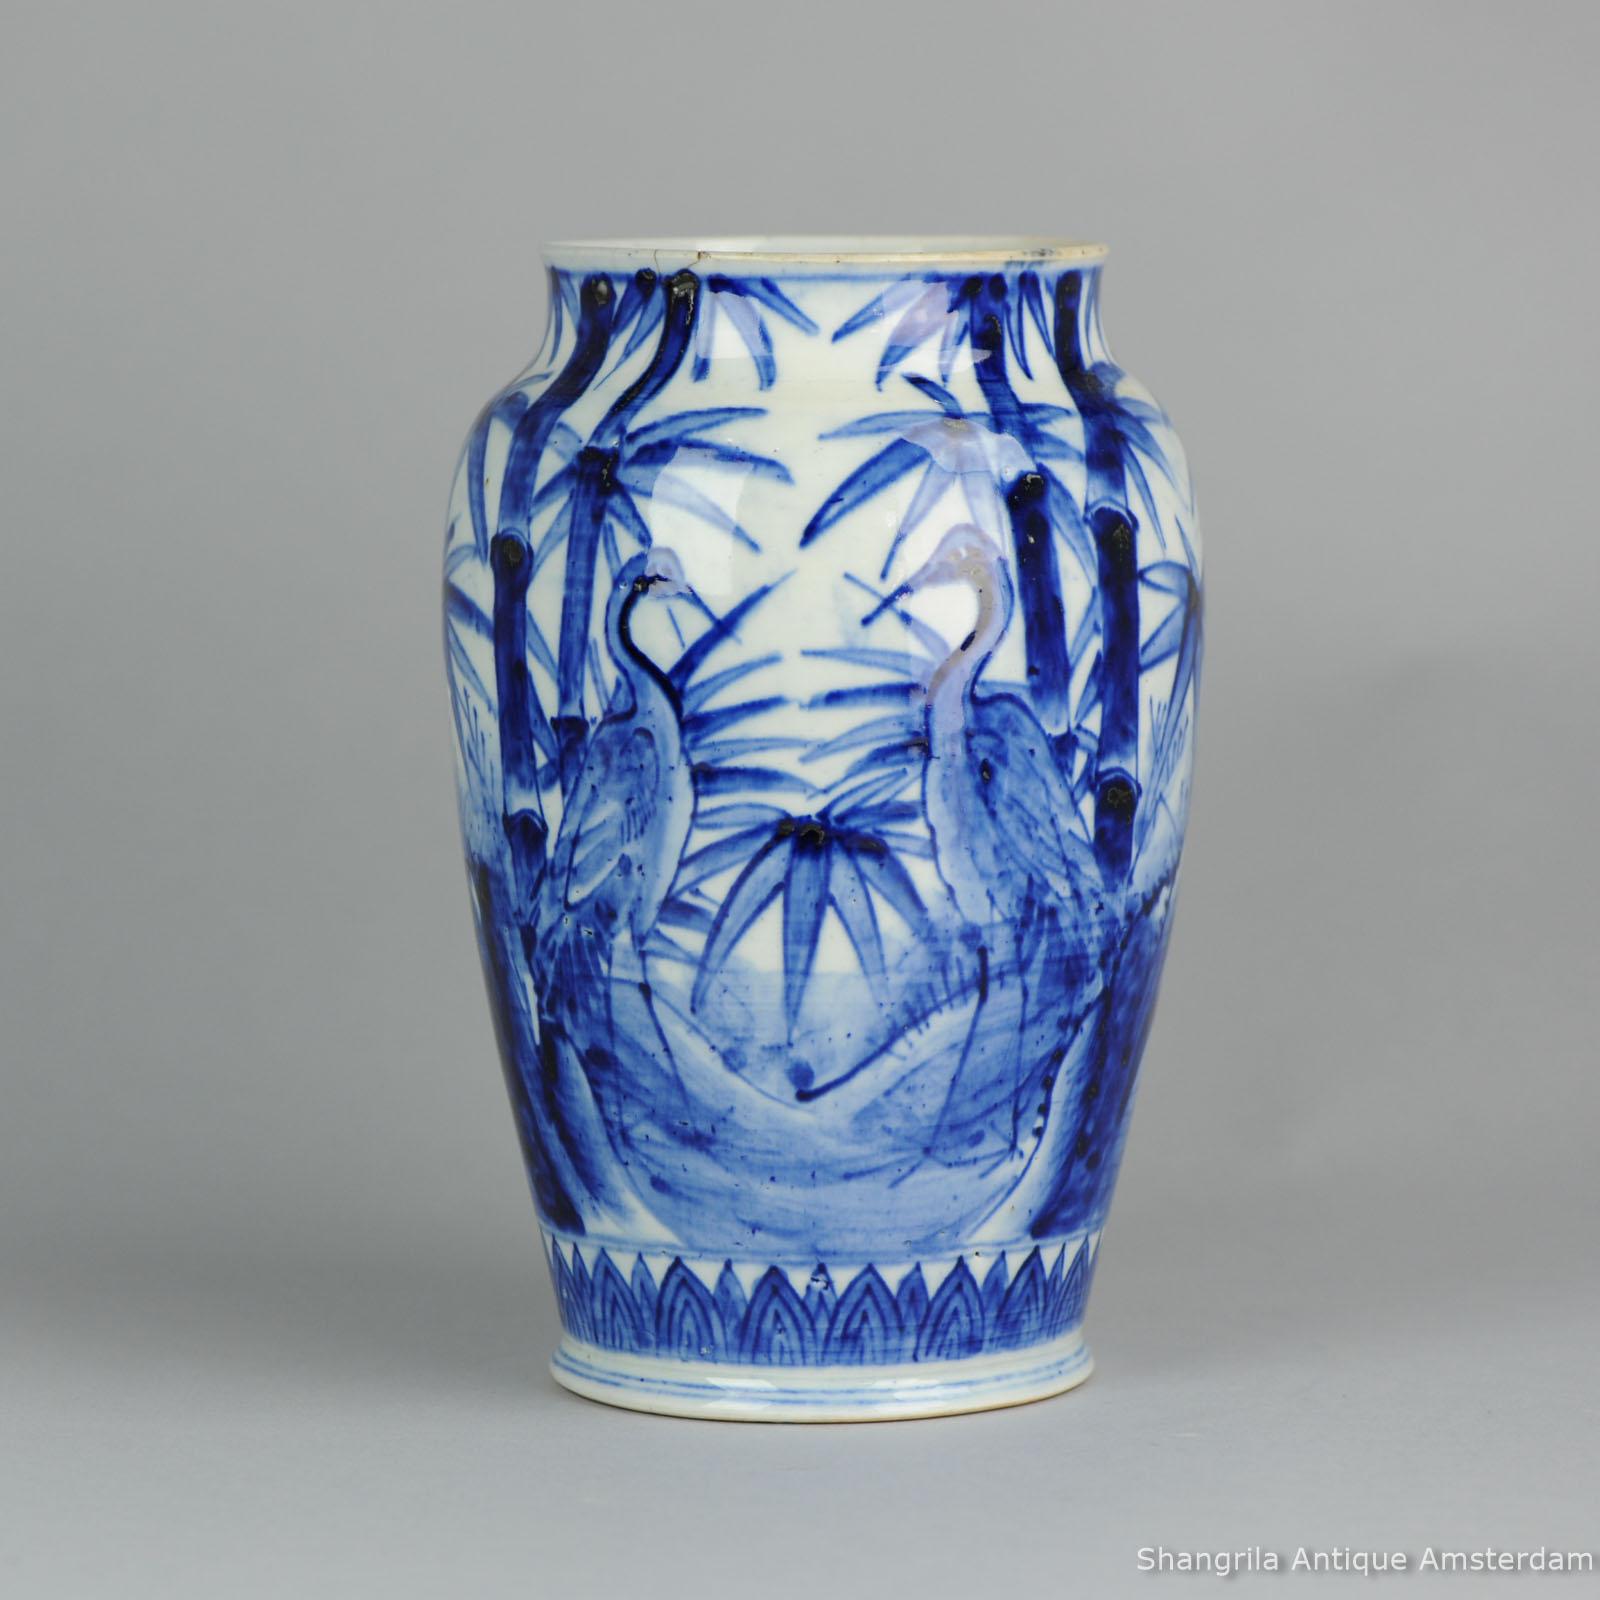 Eine sehr schöne Vase.

Bedingung
Gesamtzustand D (restauriert). Nachgeklebter Chip Haaransatz. Größe: ca. 240 mm.

Zeitraum
19. Jahrhundert Meiji-Zeit (1867-1912).